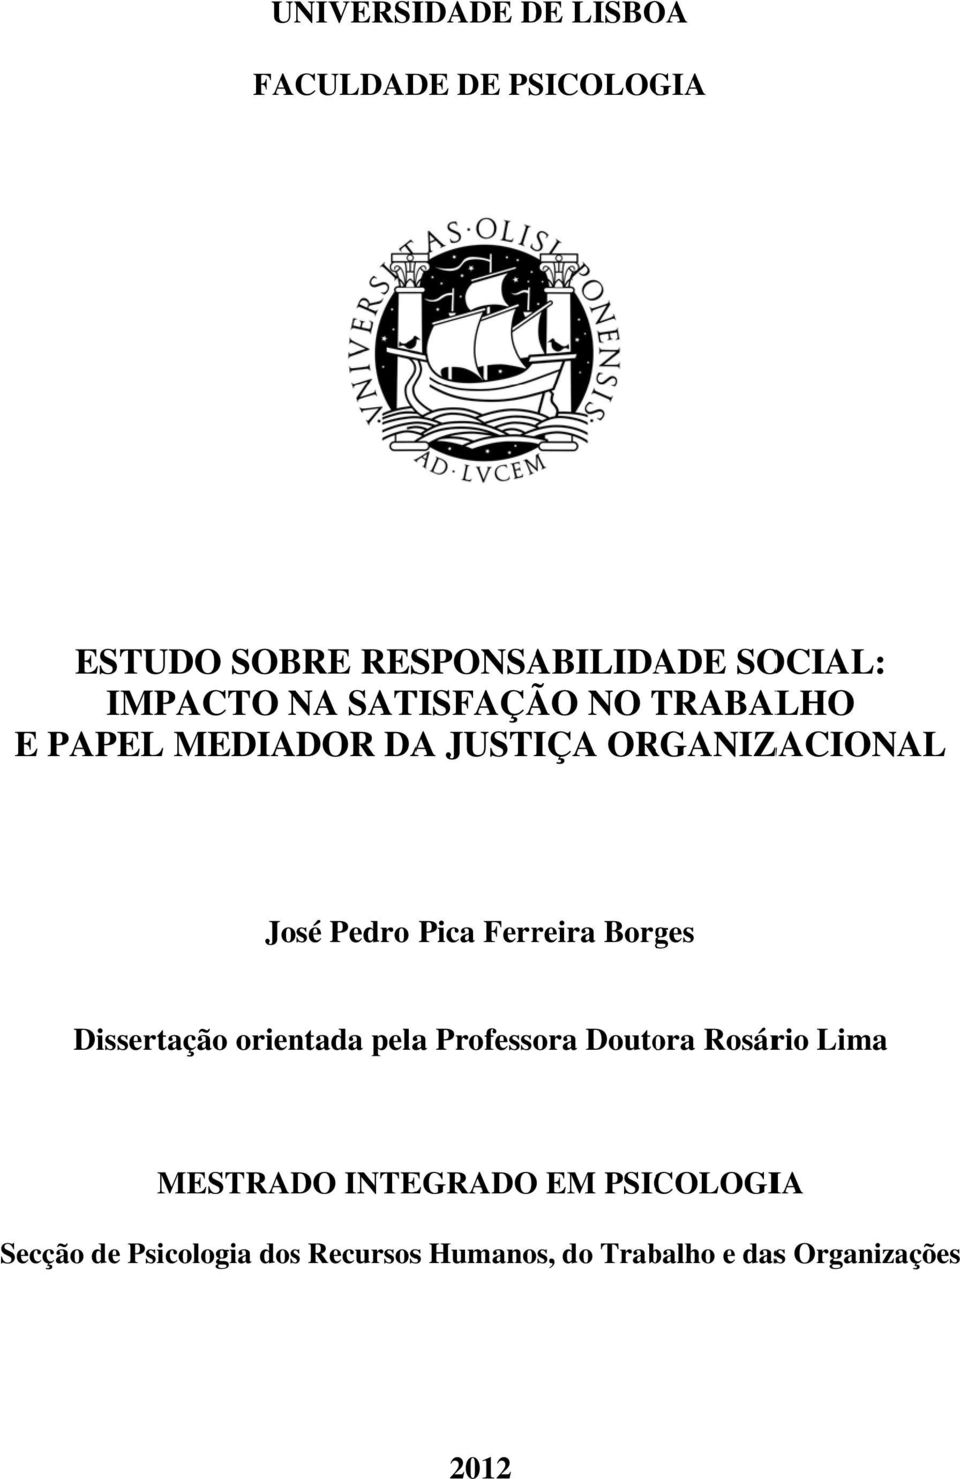 Ferreira Borges Dissertação orientada pelaa Professora Doutora Rosário Lima MESTRADO